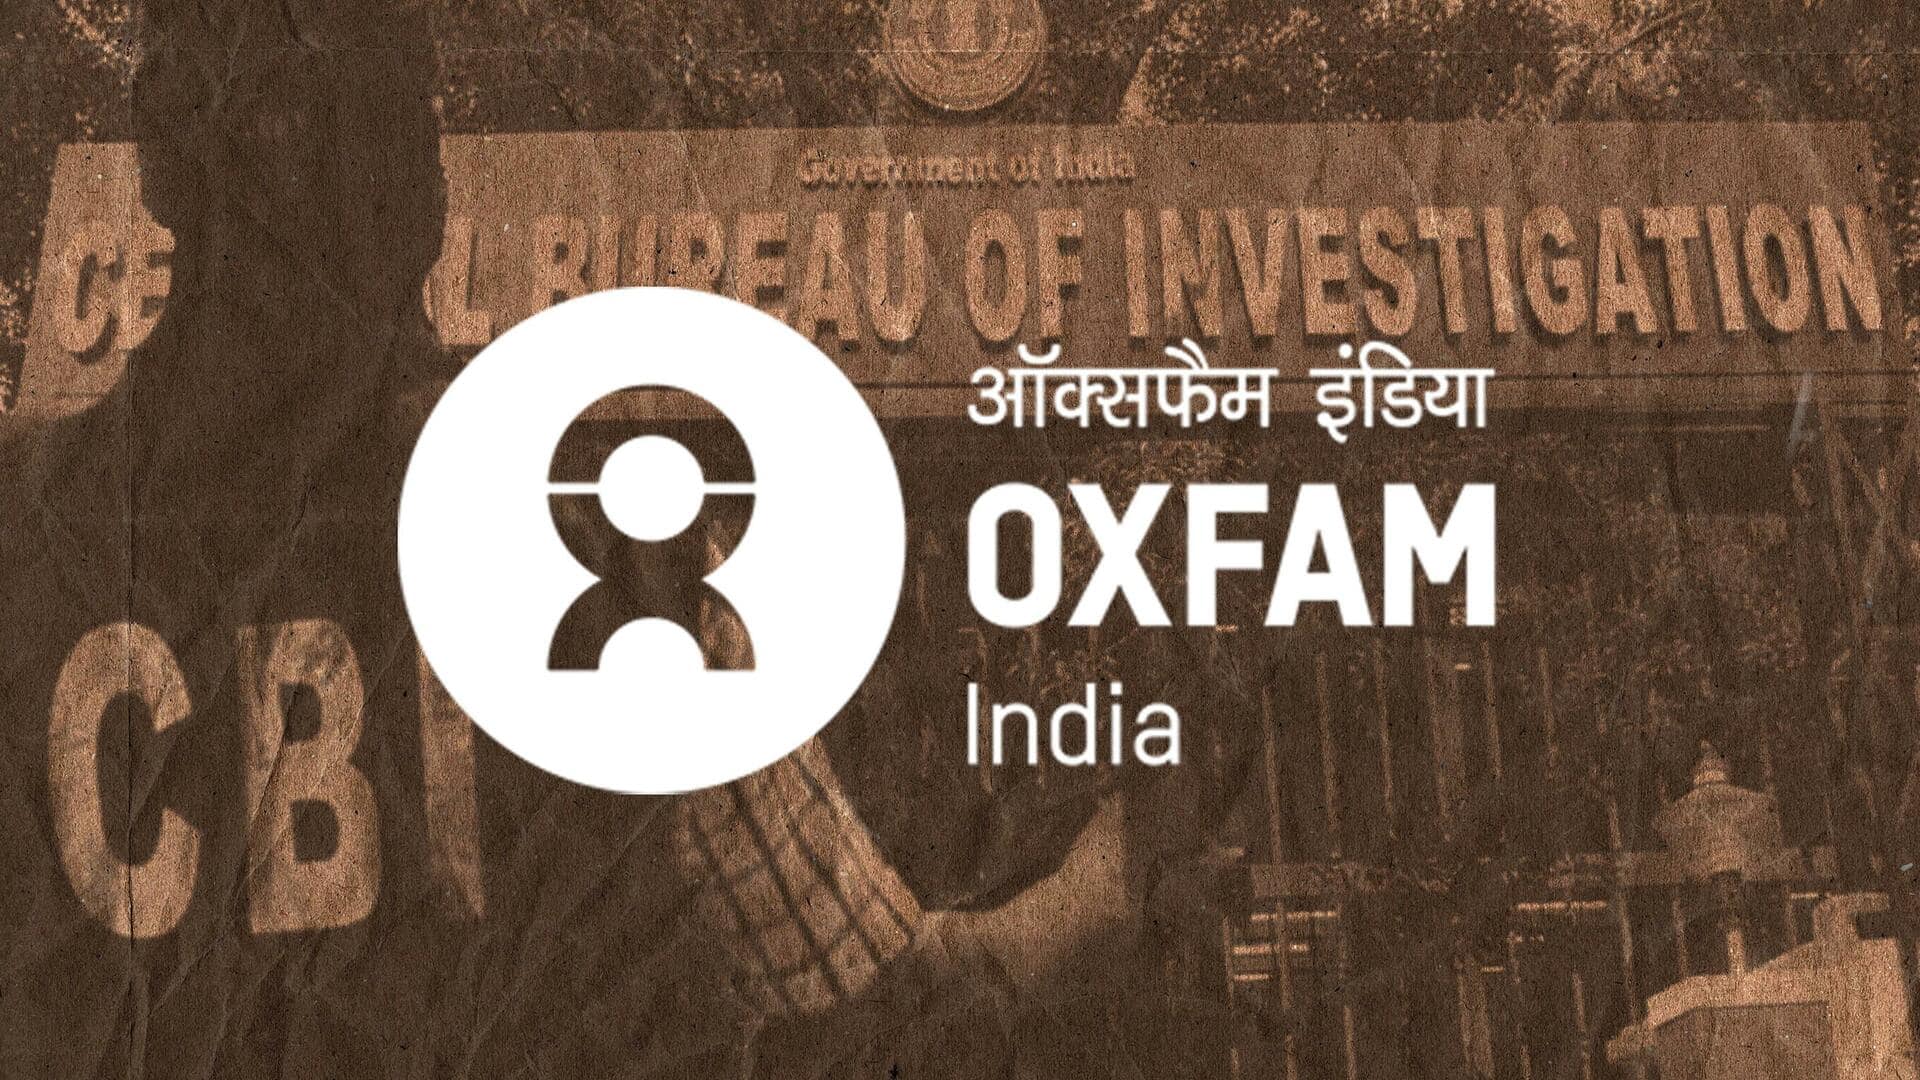 गृह मंत्रालय ने की ऑक्सफैम इंडिया के खिलाफ CBI जांच की सिफारिश, जानें कारण